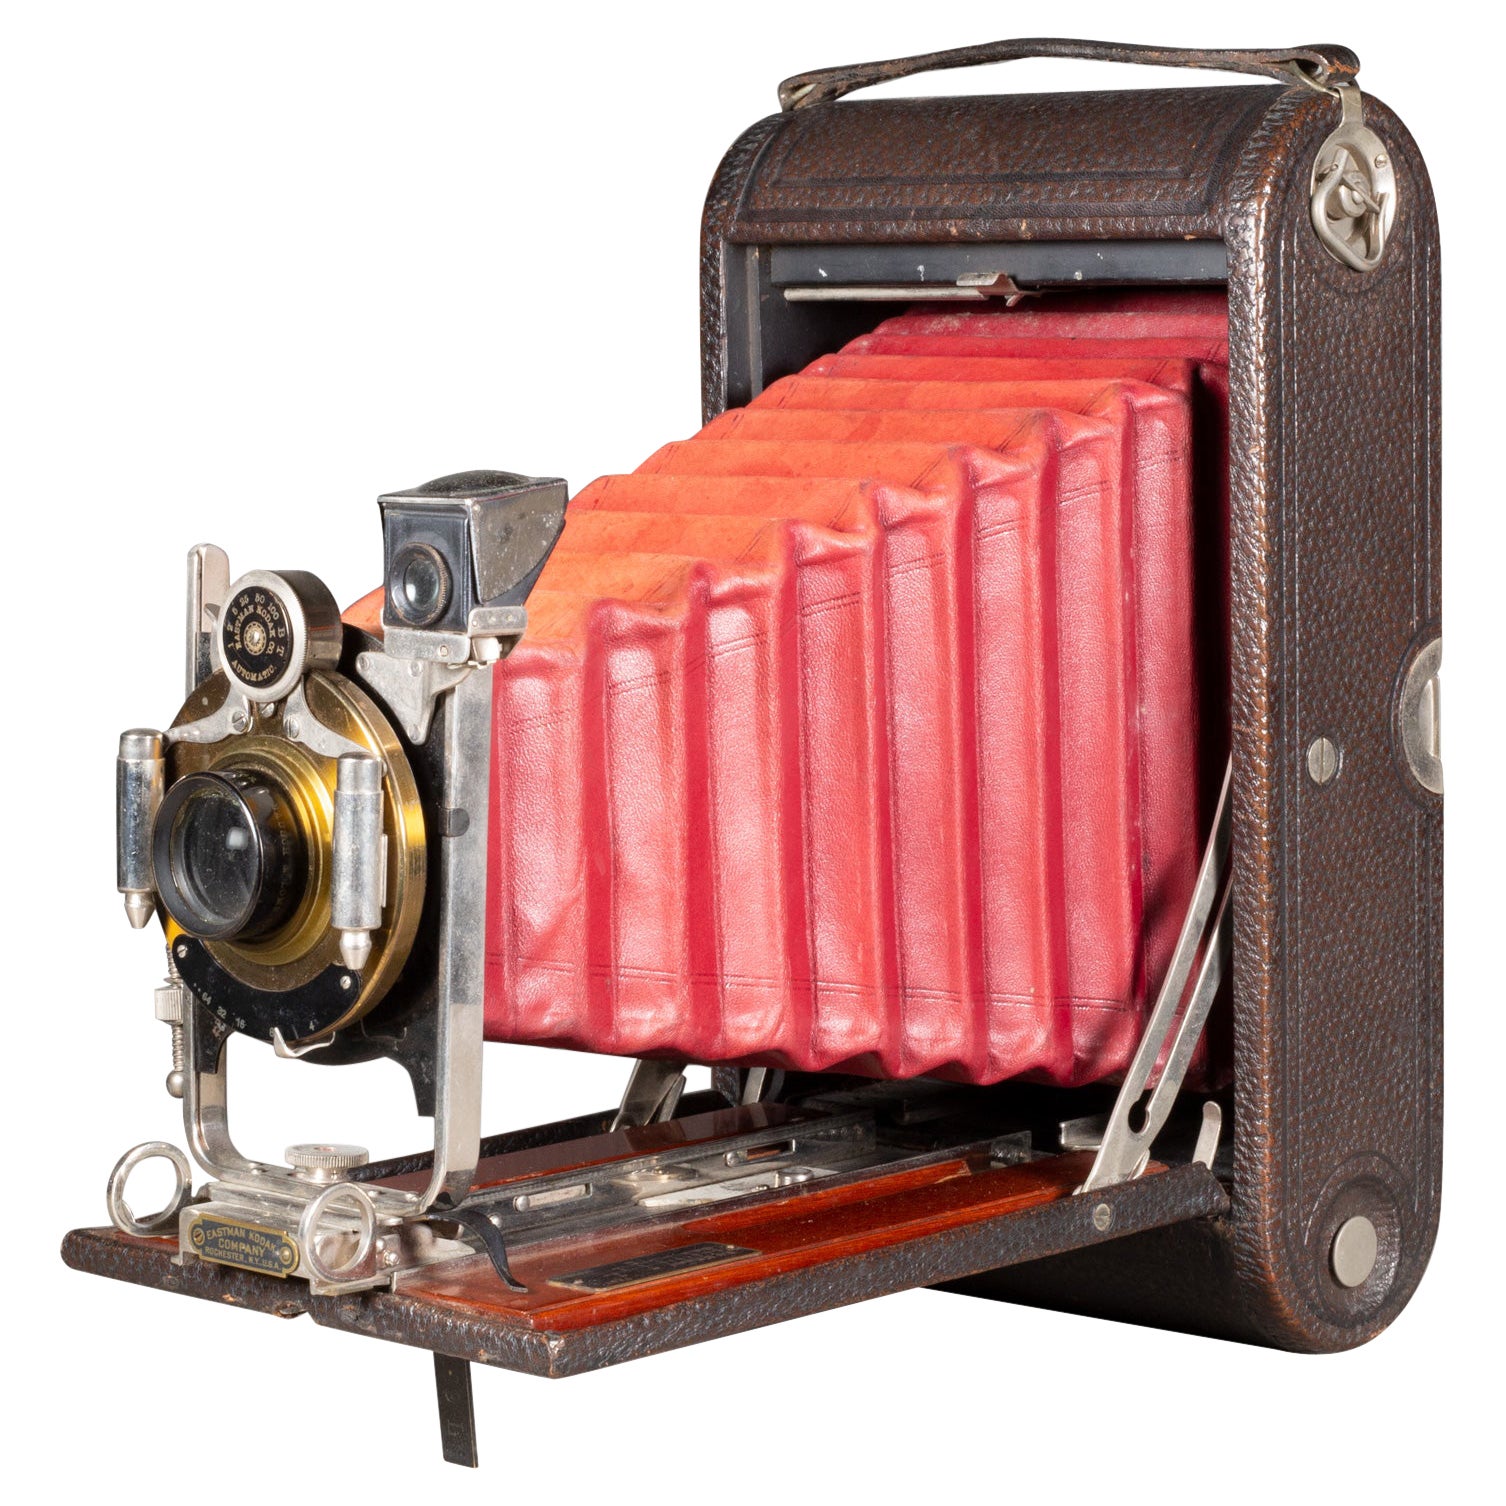 Grande appareil photo Kodak n° 3A pliable avec incrustation d'acajou, vers 1910 (expédition gratuite)